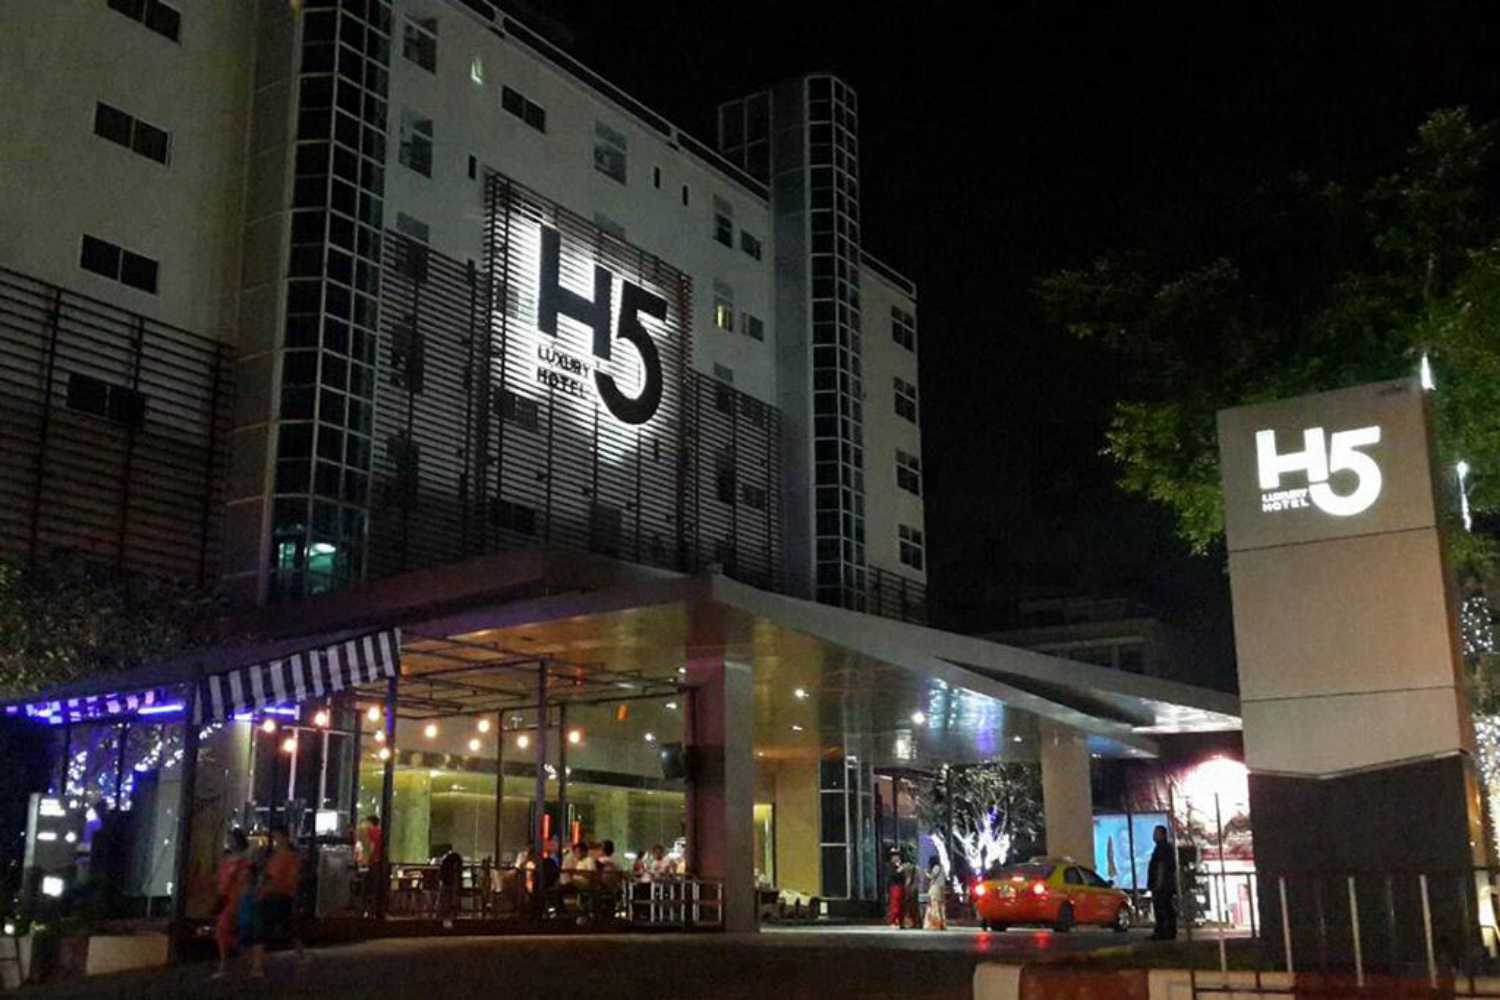 H5 Luxury Hotel - Image 0